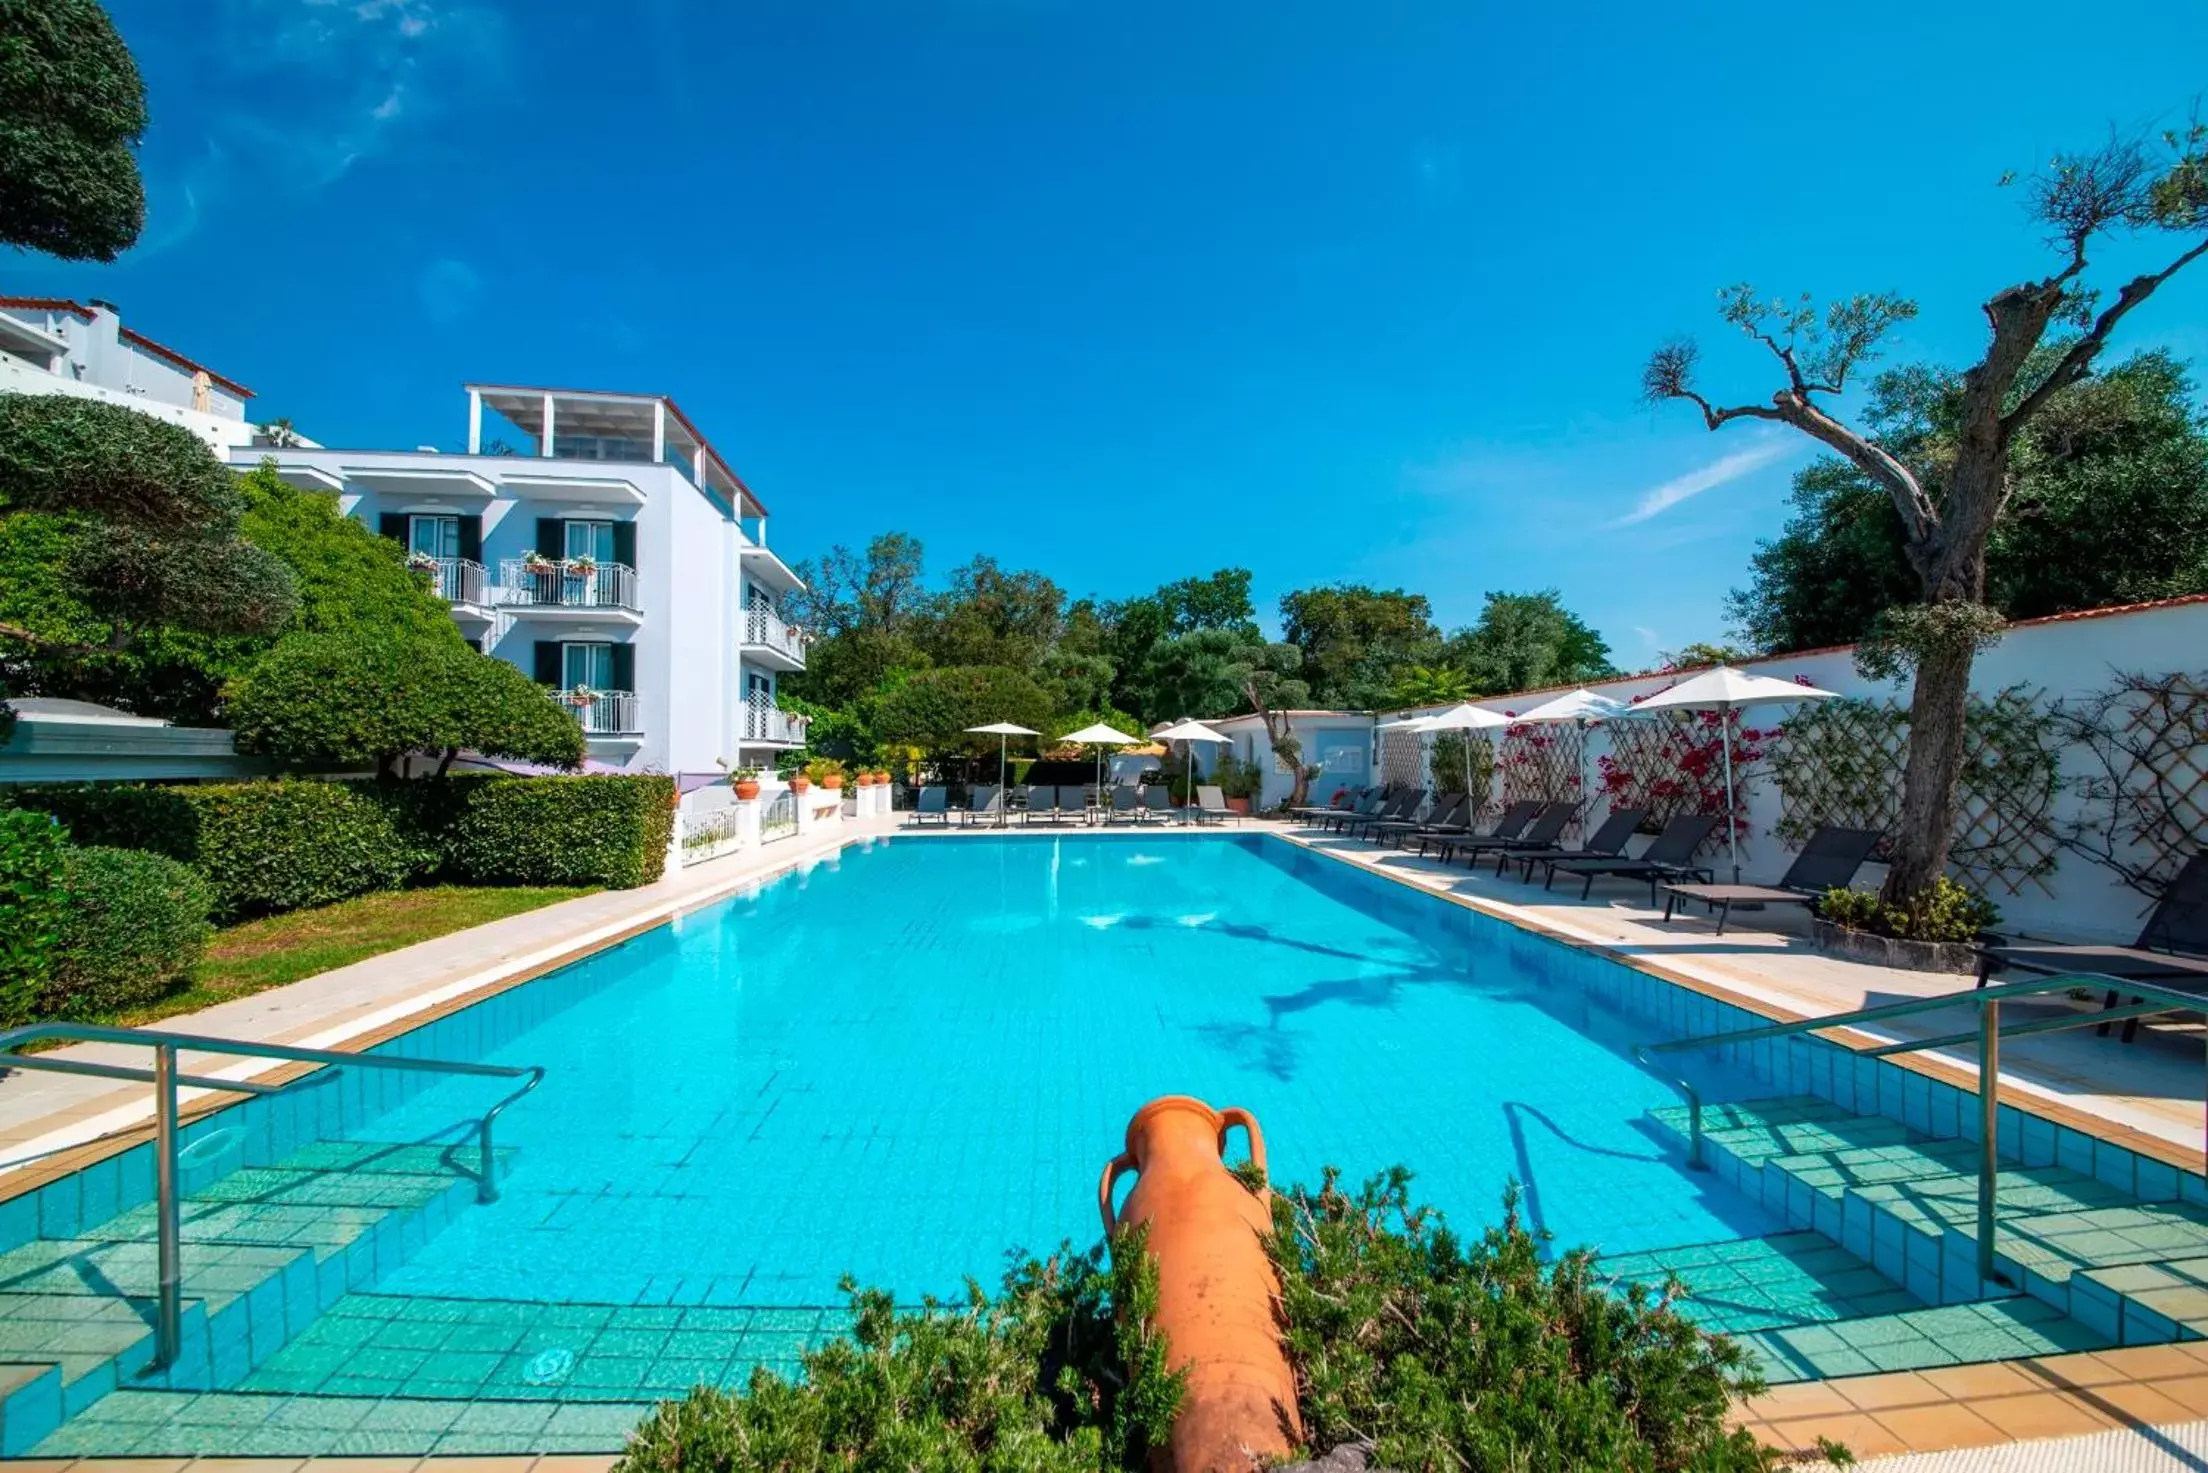 Swimming Pool in Hotel Villa Durrueli Resort & Spa